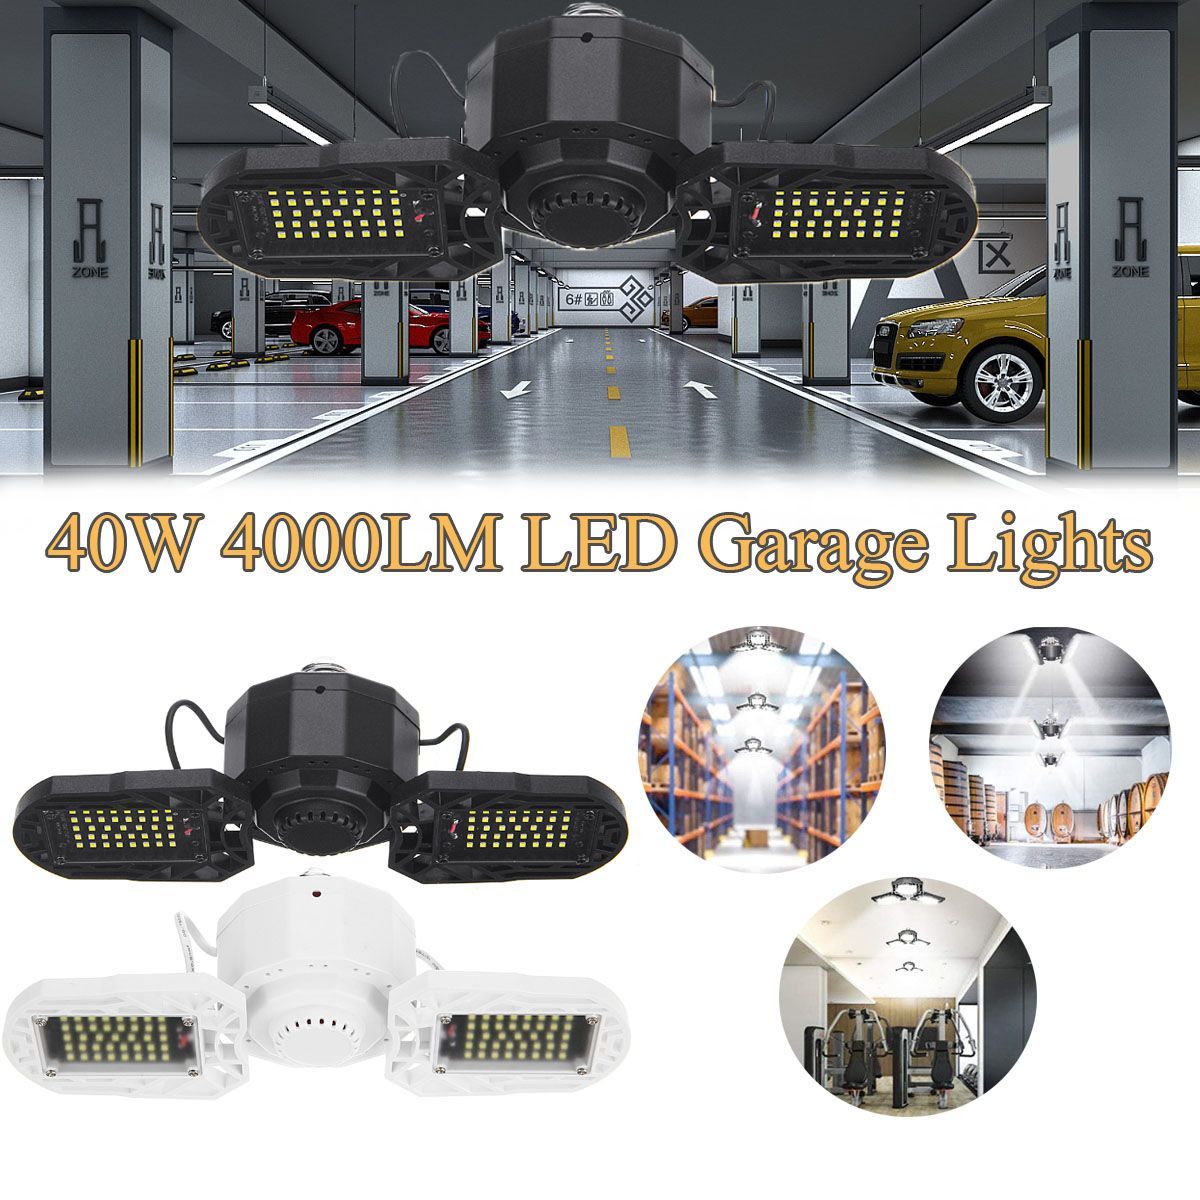 E27-40W-4000LM-LED-Garage-Lights-Deformable-Garage-Ceiling-Light-1704007